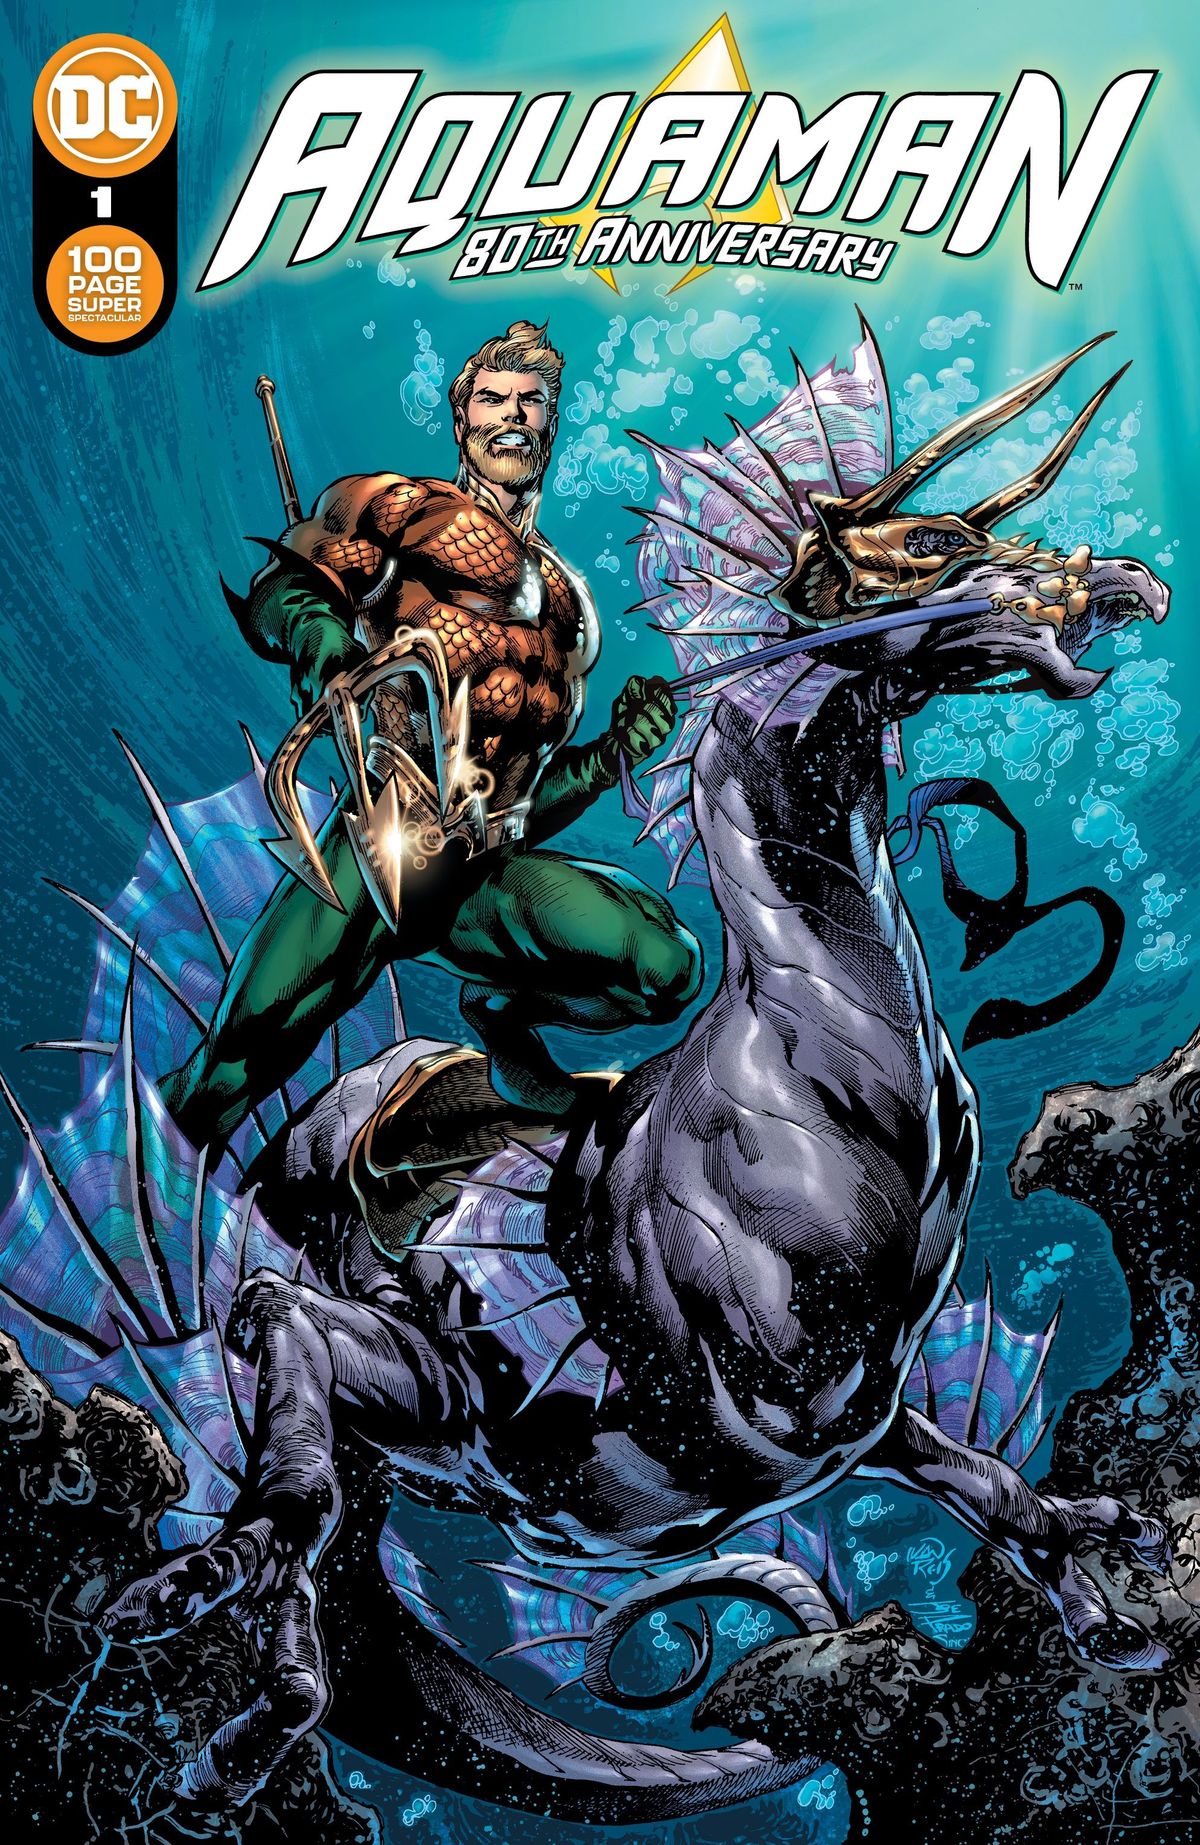 DC ฉลอง 80 ปี Aquaman ด้วย 100 หน้า Super Spectacular